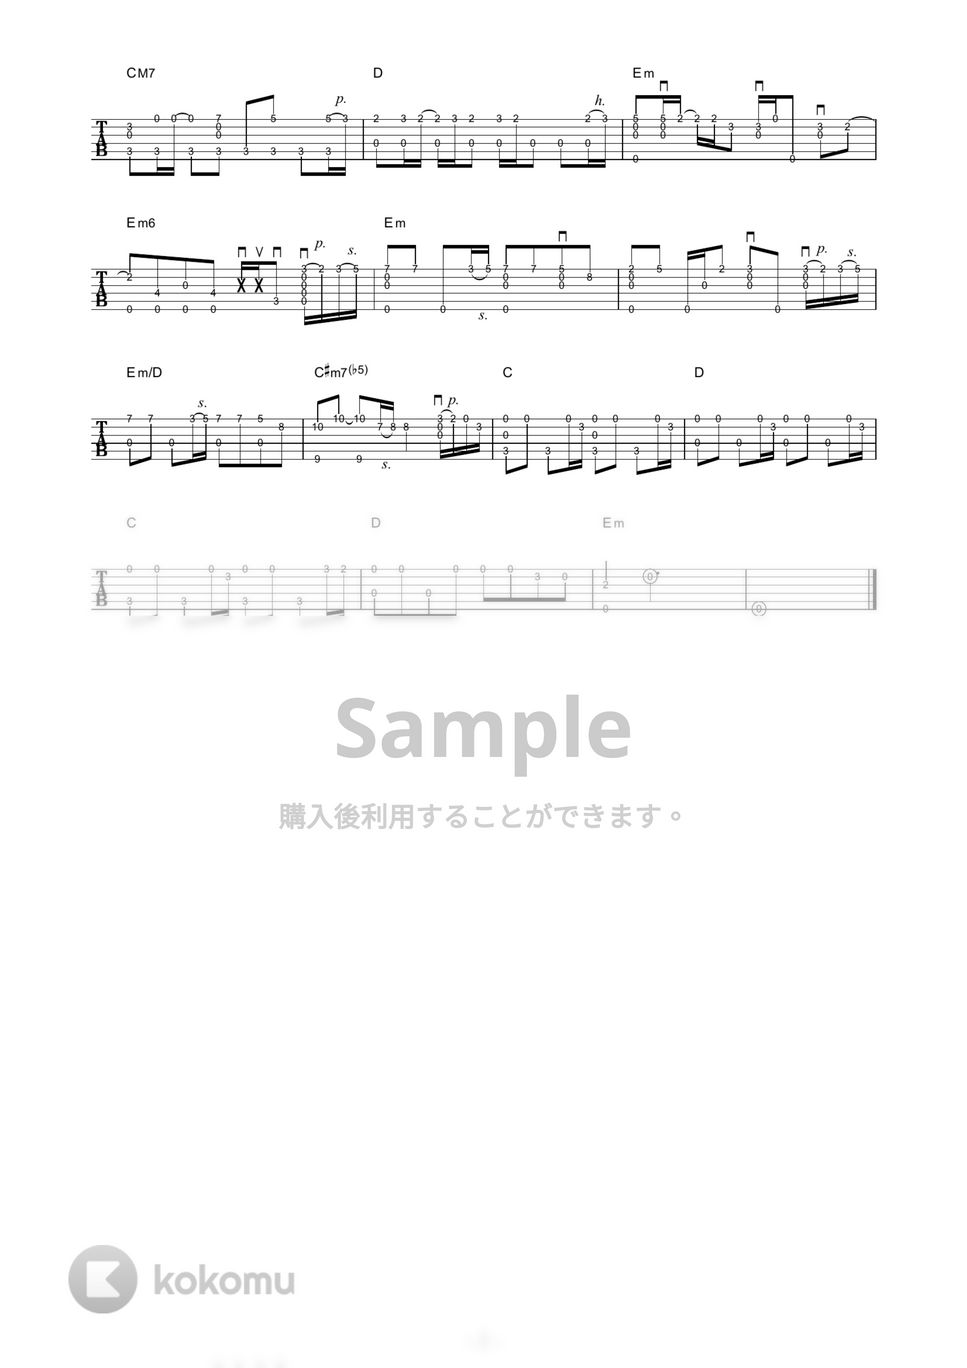 Aimer - 花の唄 (ソロギター) by 伴奏屋TAB譜